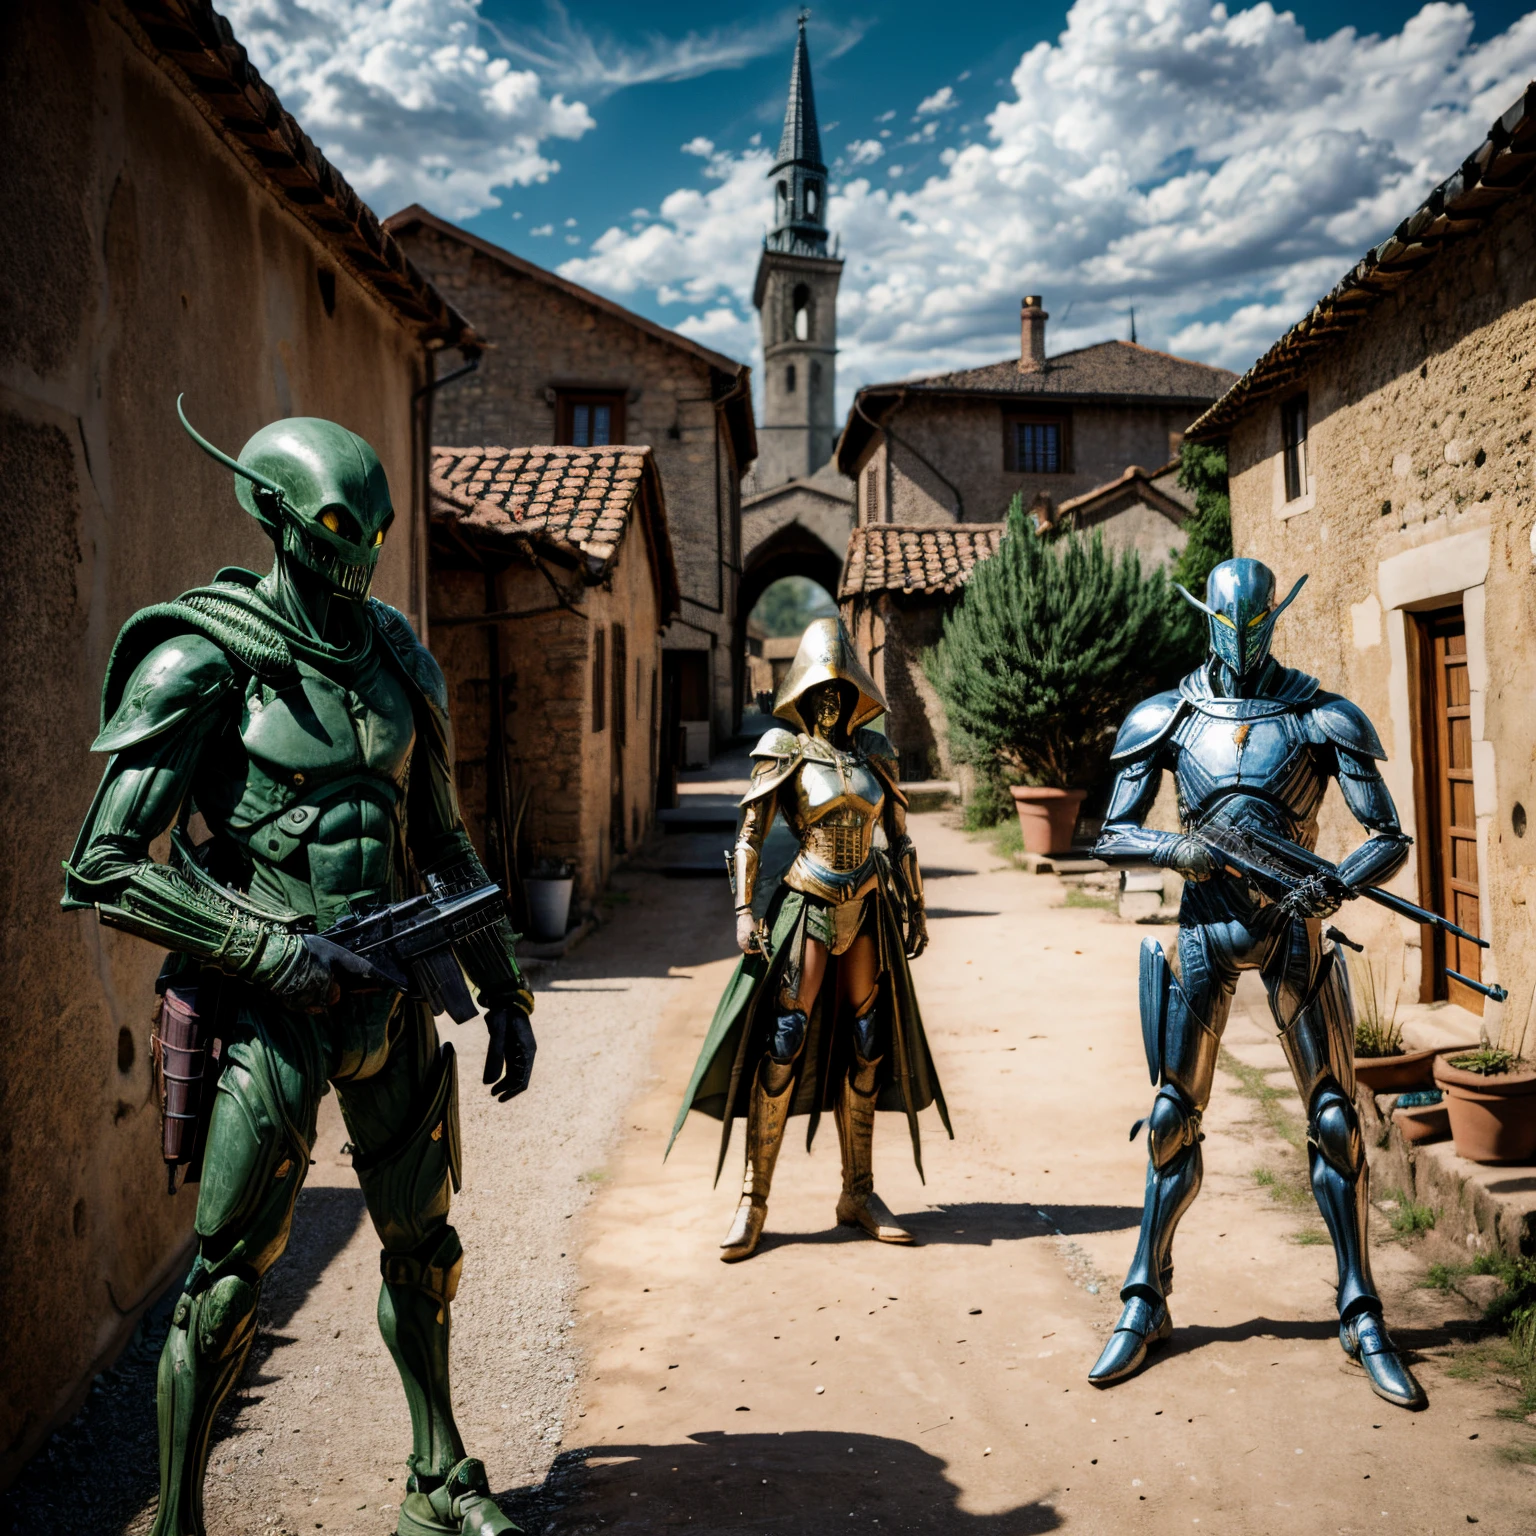 Bewaffnete Aliens stehen in einem mittelalterlichen Dorf